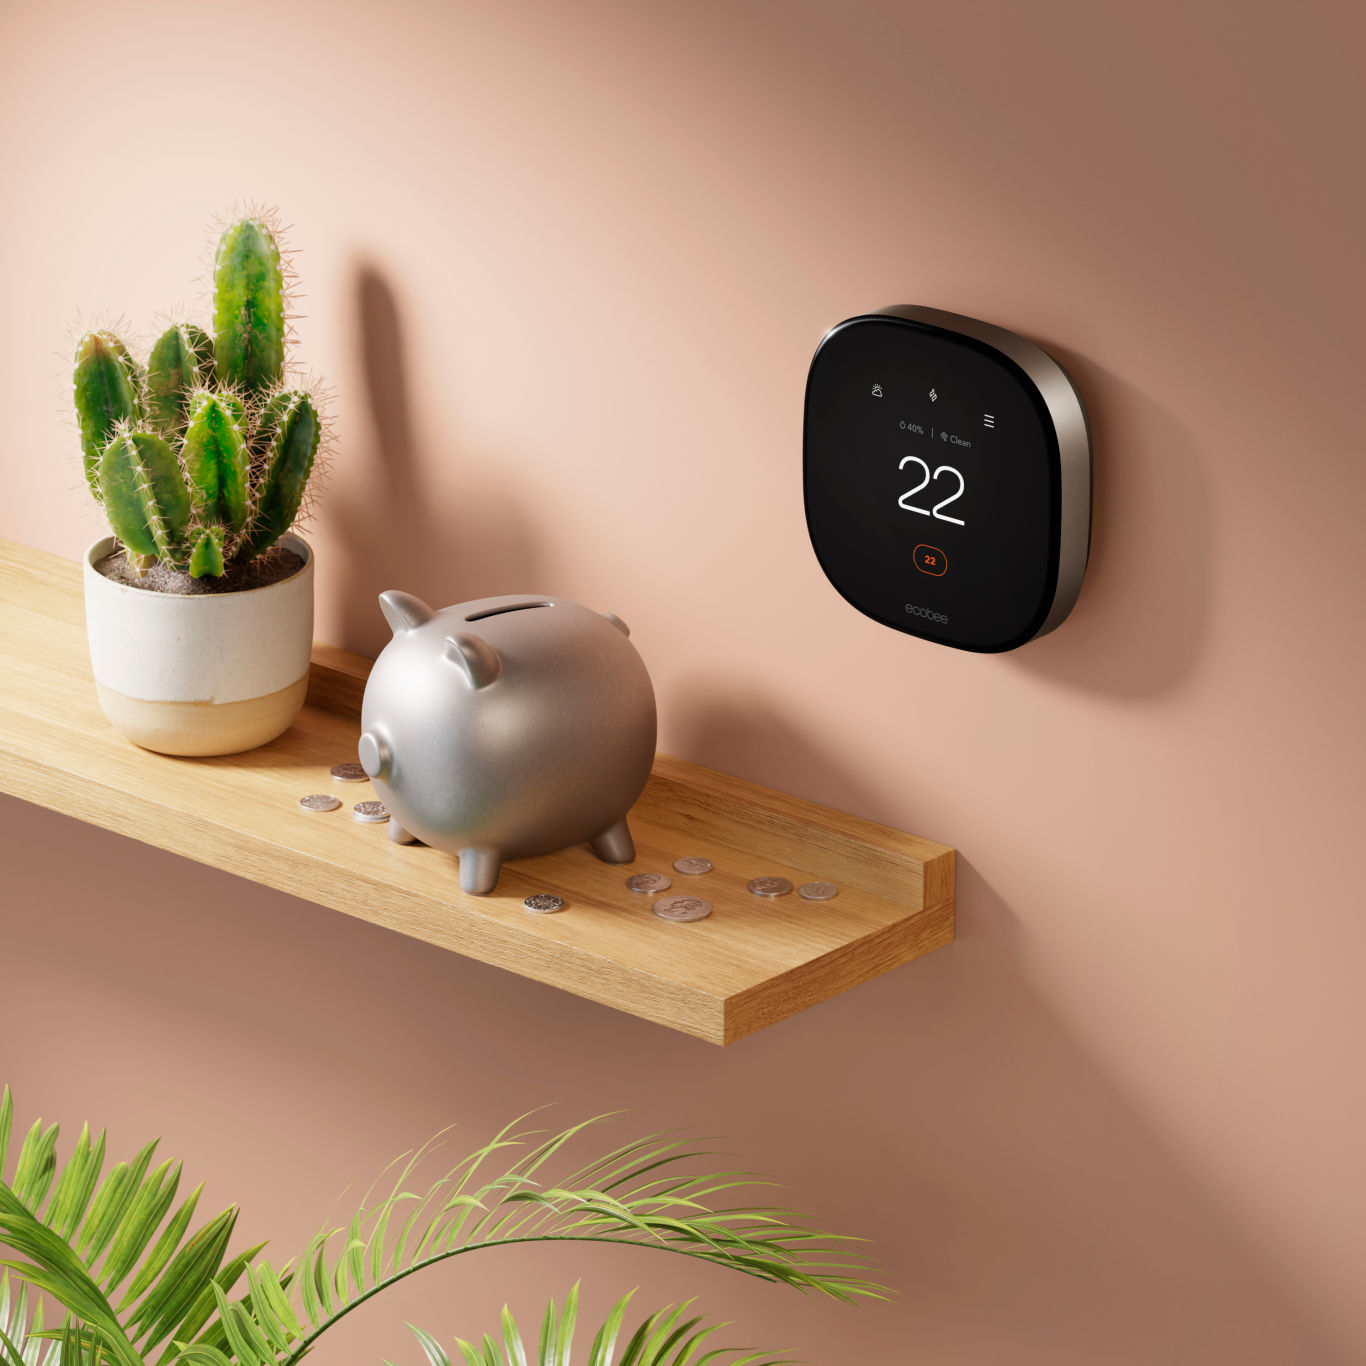 Ecobee Smart Thermostat Premium على الحائط بجوار الرف مع بنك أصبع وعملات معدنية.